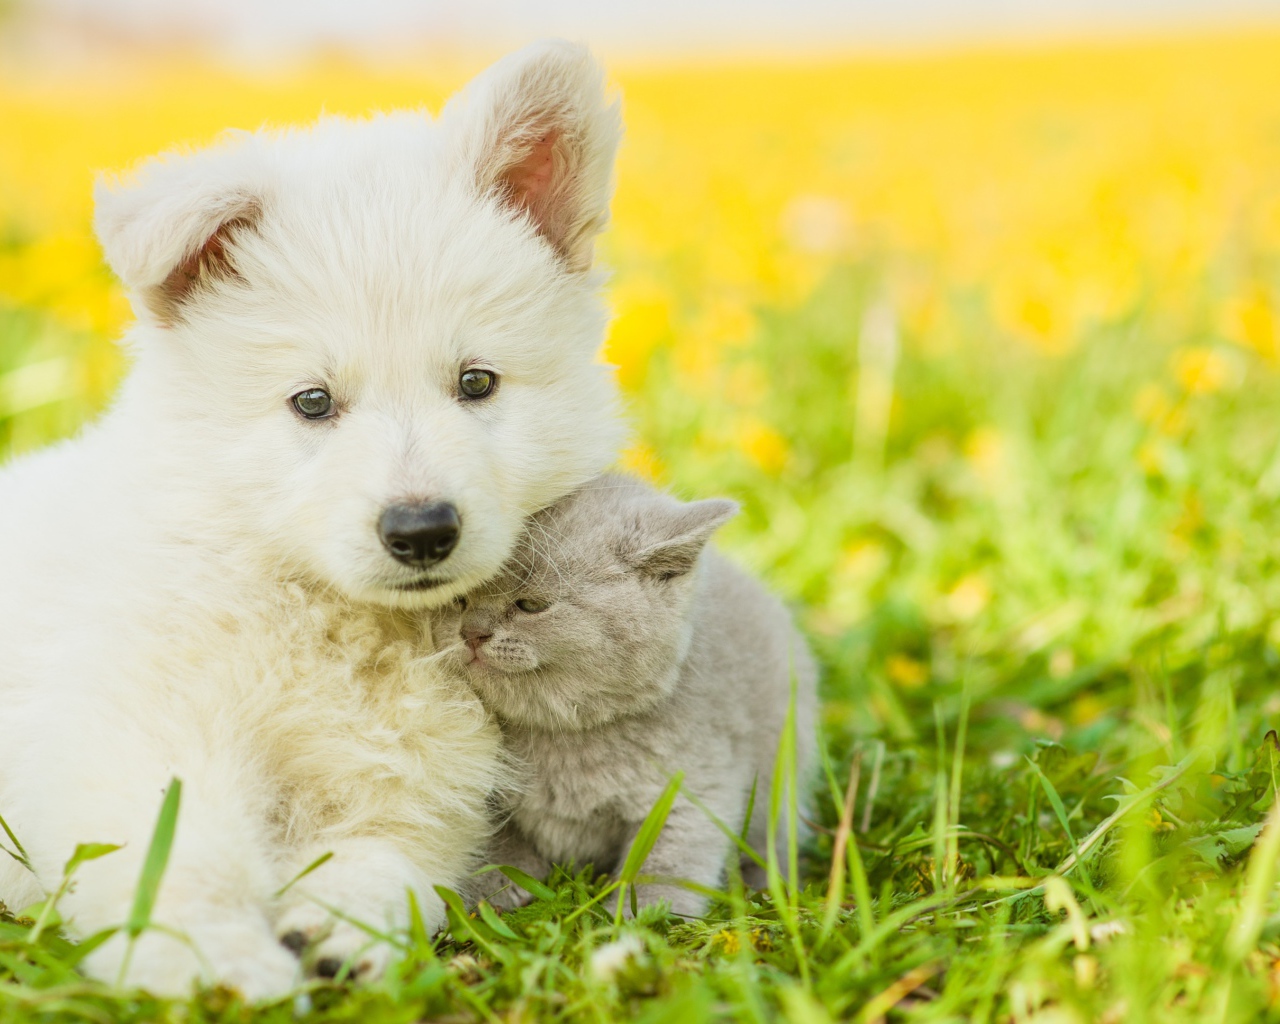 Пушистый белый щенок с серым котенком сидят на траве